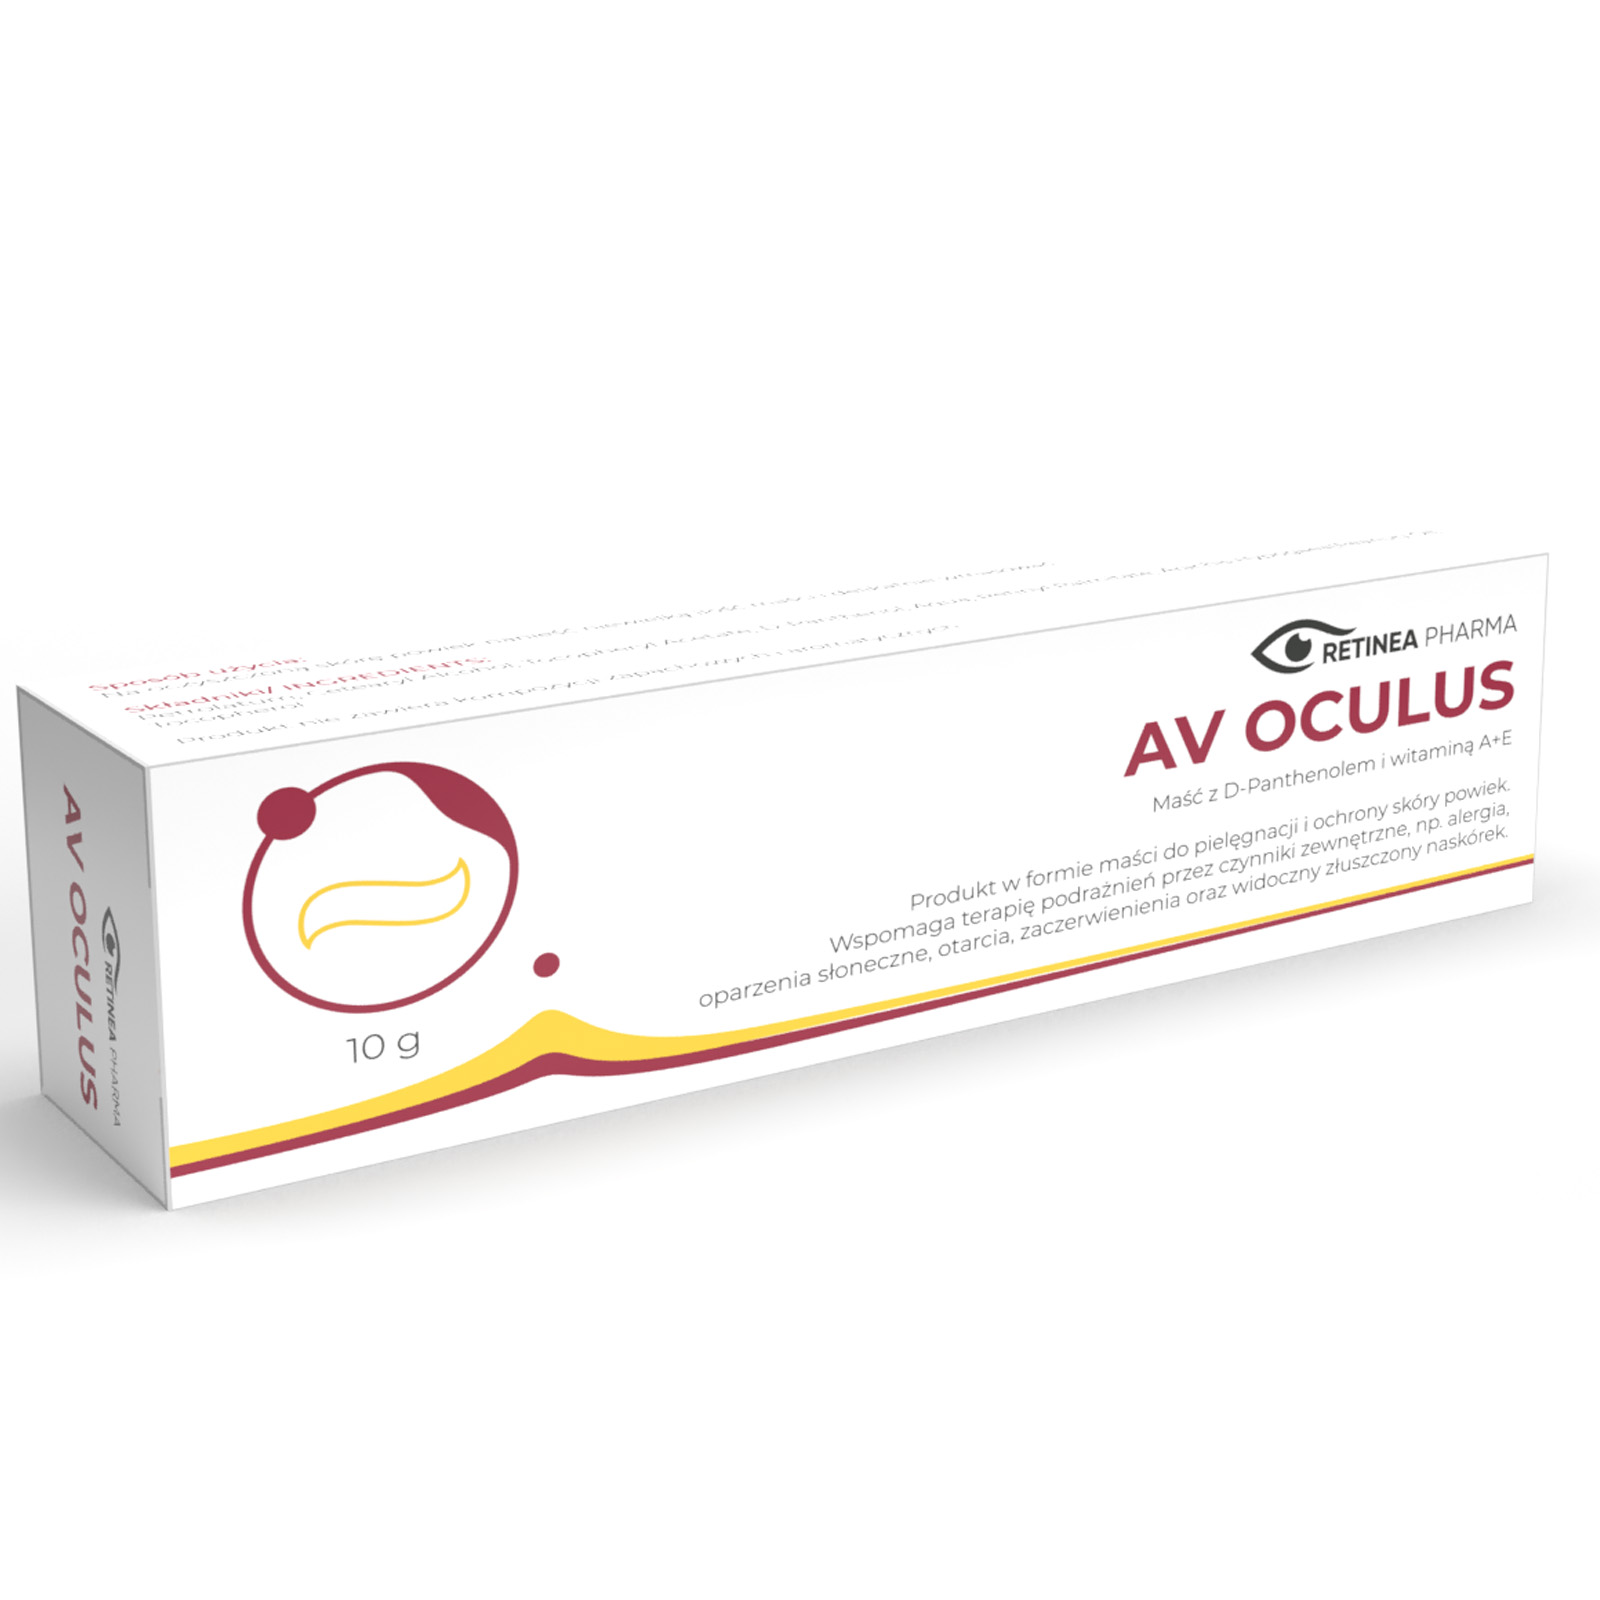  AV Oculus Retinea Pharma by Pharm Supply 